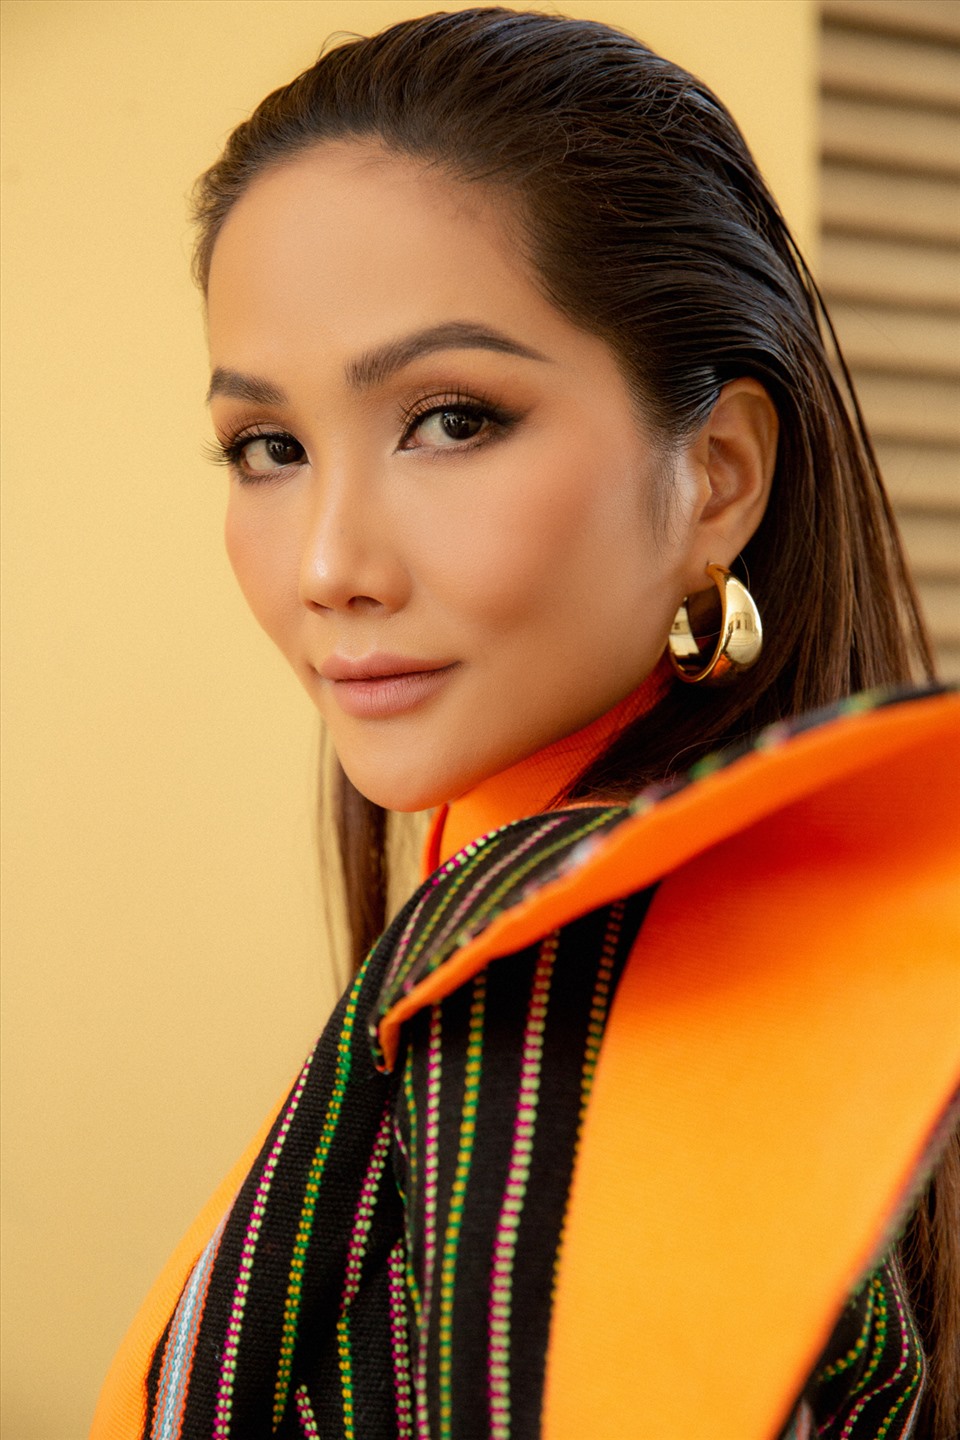 Mới đây, Hoa hậu H'Hen Niê đã xuất hiện rực rỡ với vai trò đại sứ hình ảnh của Lễ hội Áo dài Thành phố Hồ Chí Minh lần thứ 8 năm 2022. Ảnh: Thiên An.